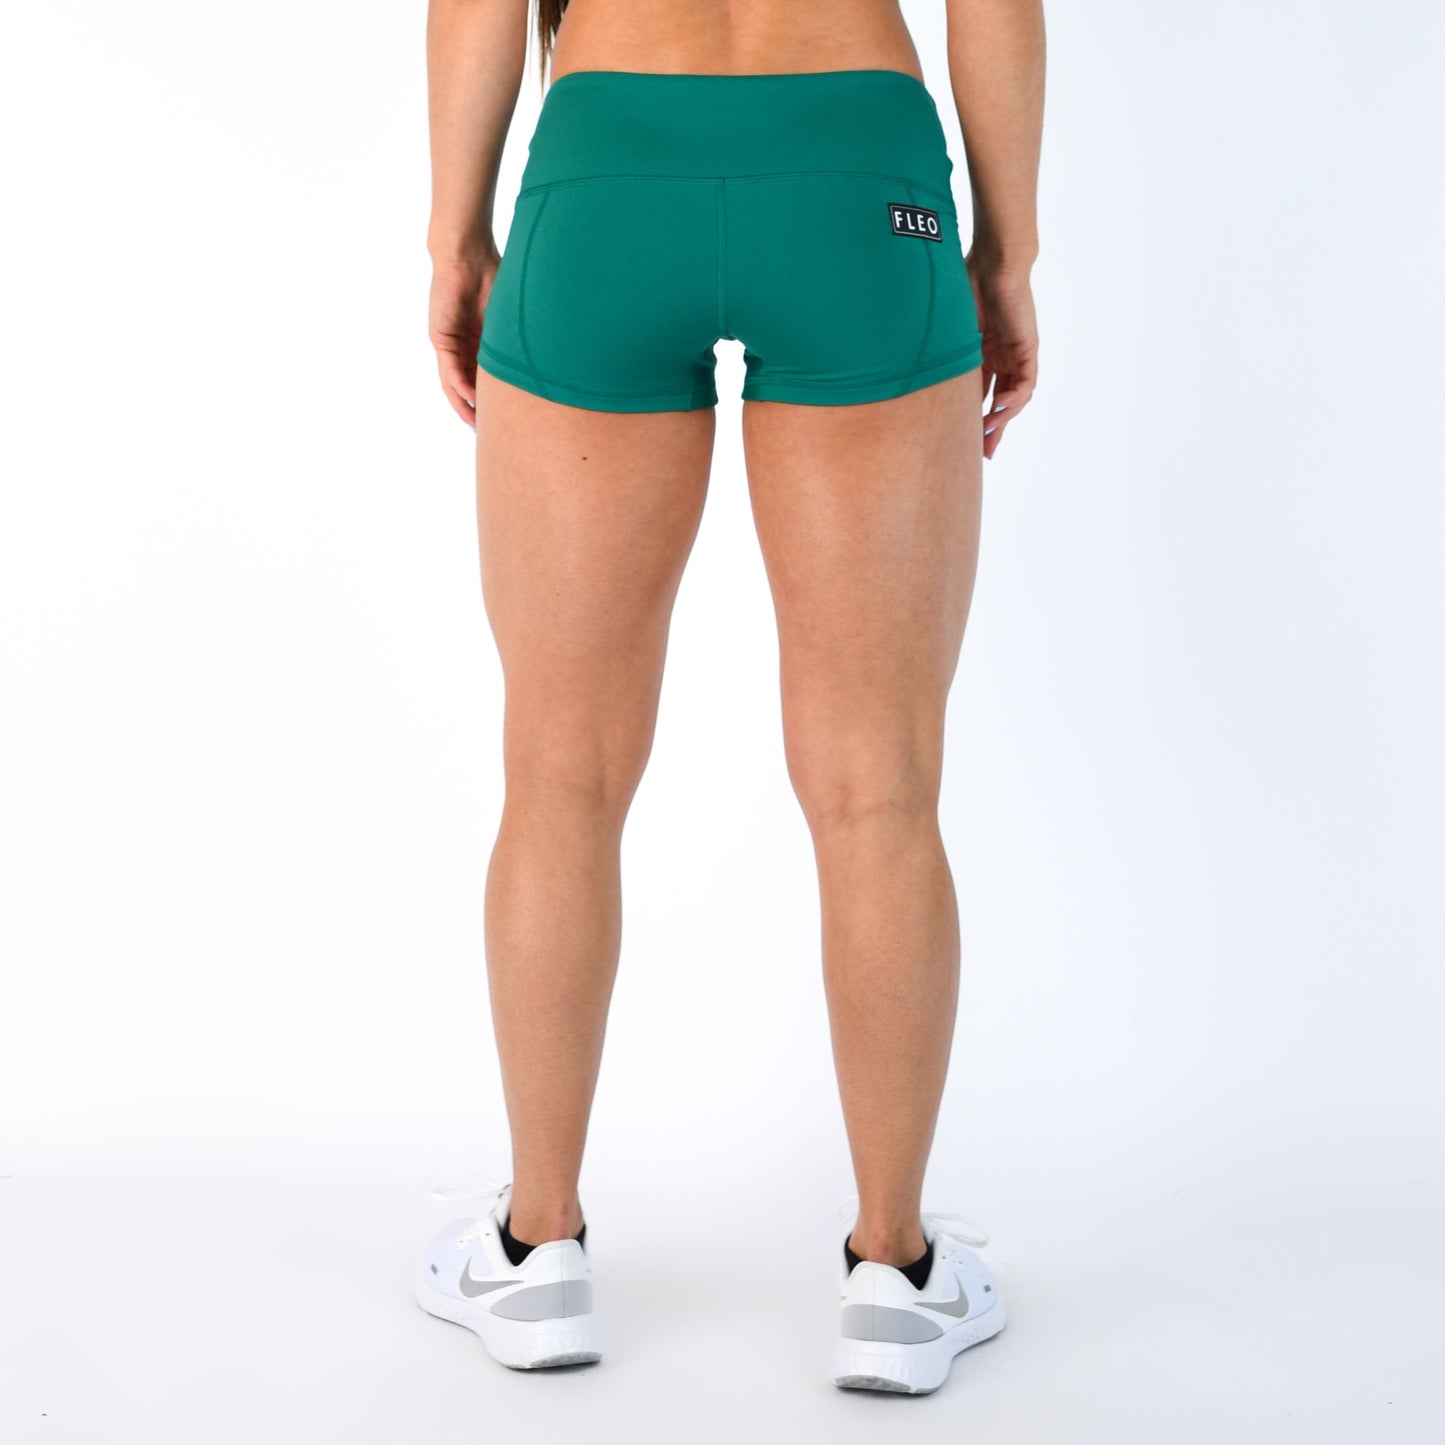 FLEO Emerald Shorts (Low-rise Contour)